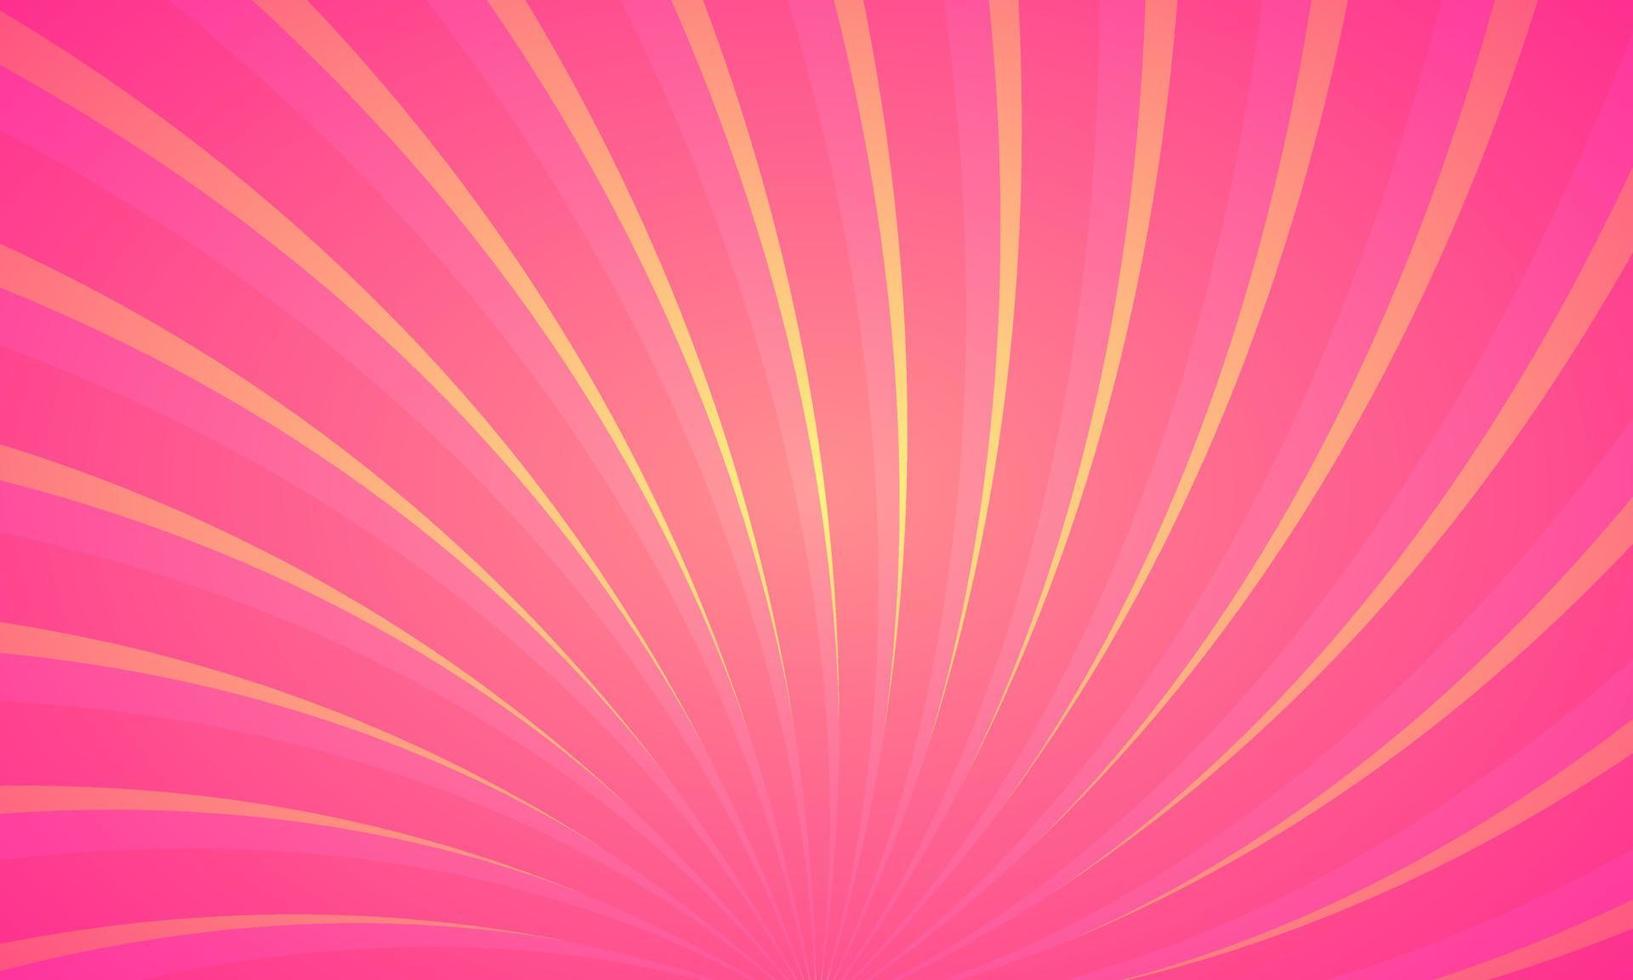 rayo fractal remolino sunburst llamarada explosión resumen fondo cartel papel pintado vector ilustración